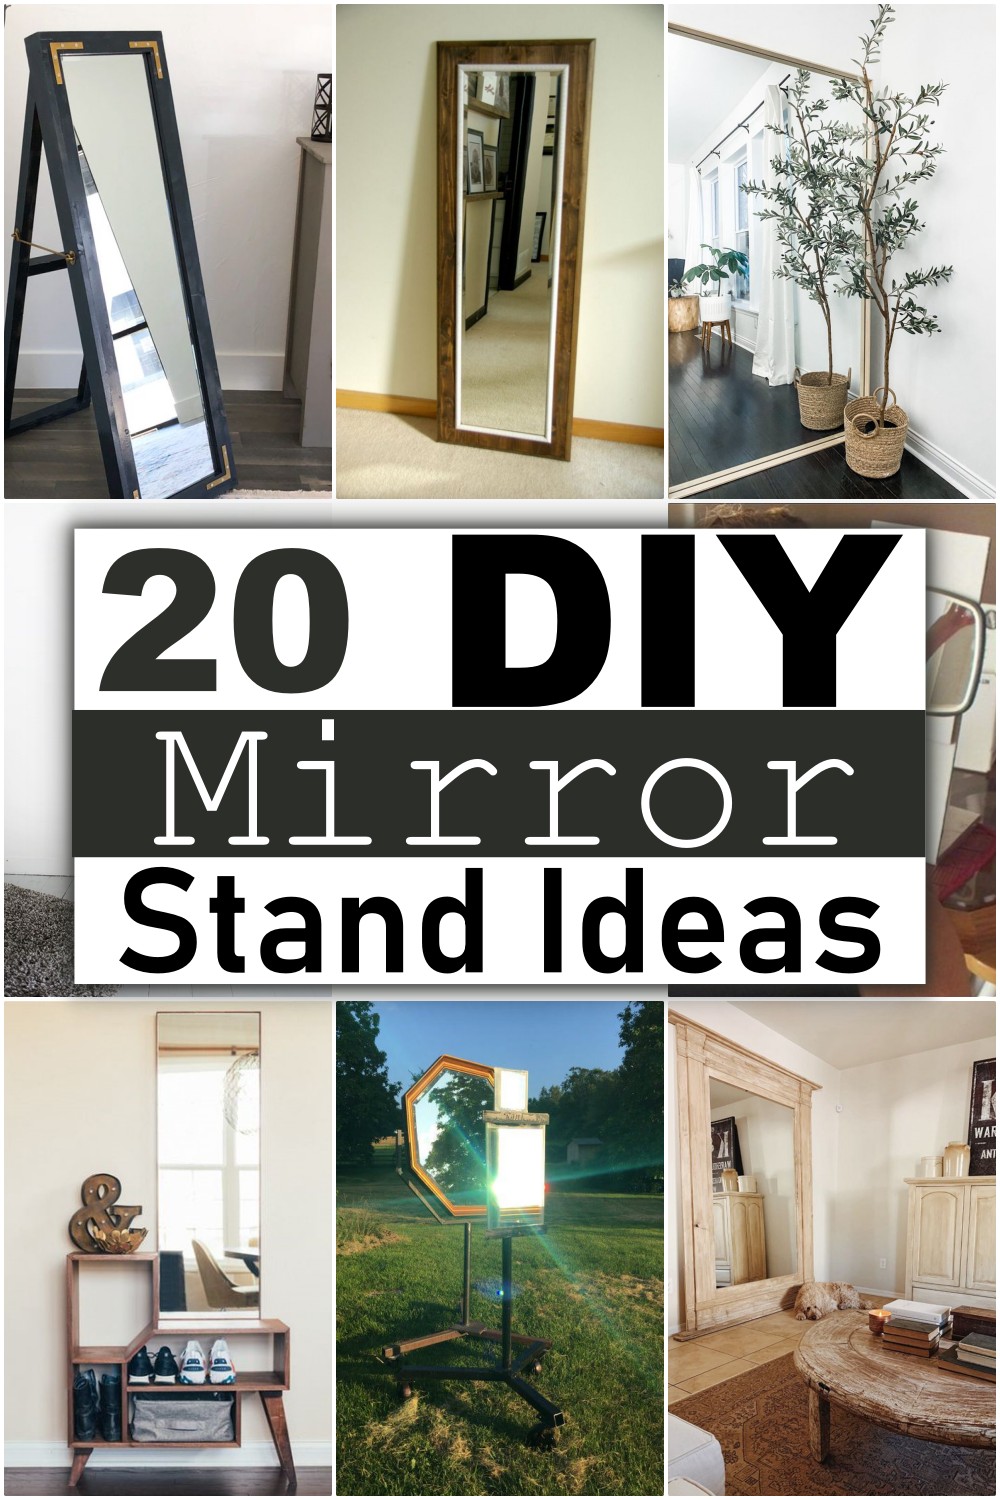 DIY Mirror Stand Ideas